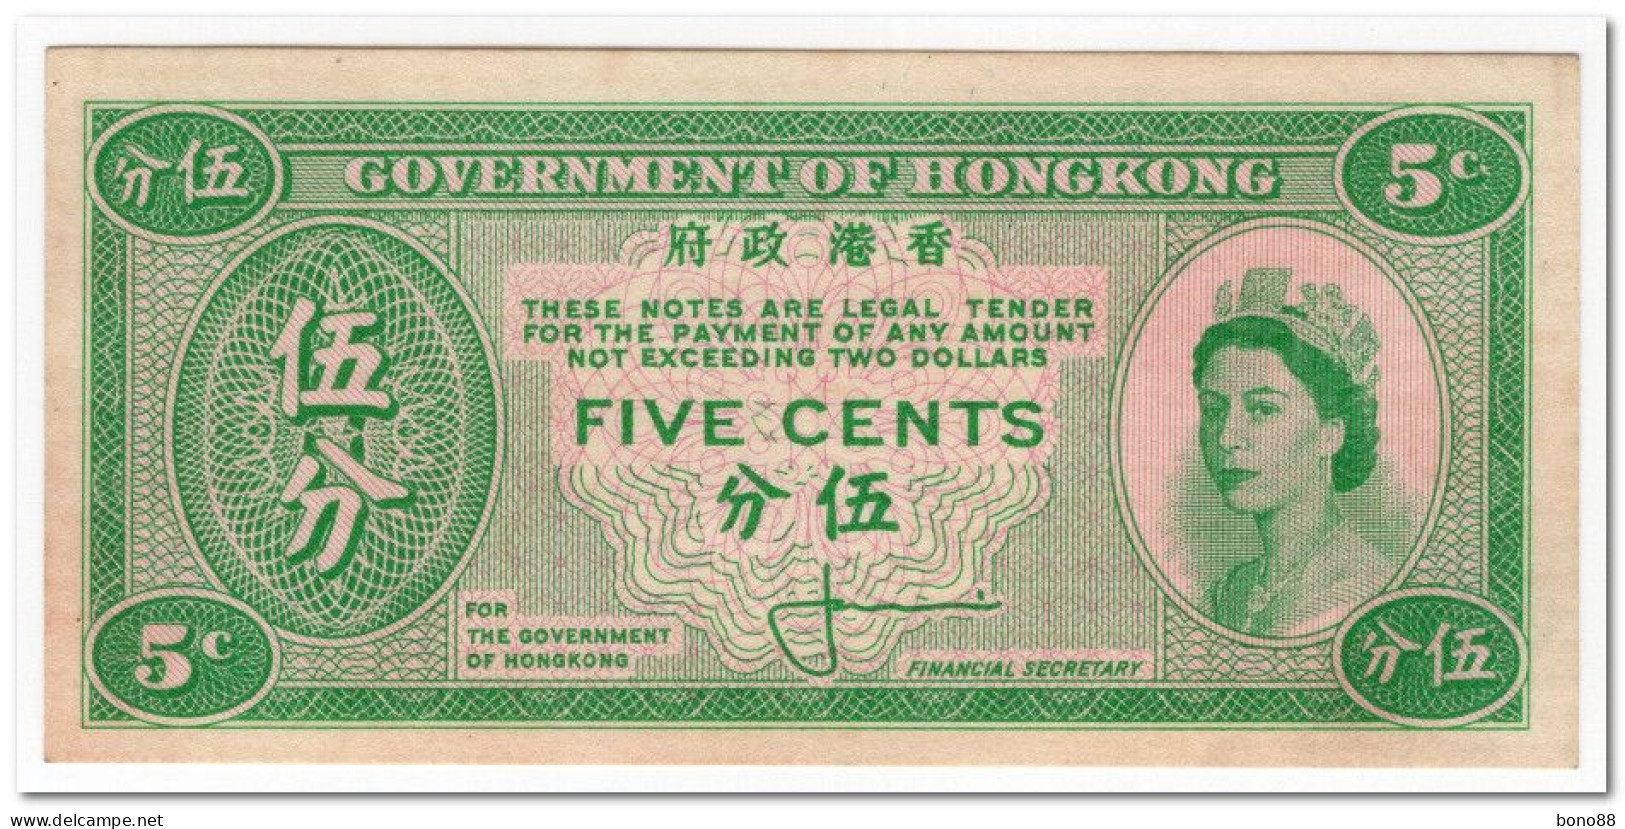 HONG KONG,5 CENTS,1961-65,P.326,XF,HAS BEEN GLUED - Hongkong